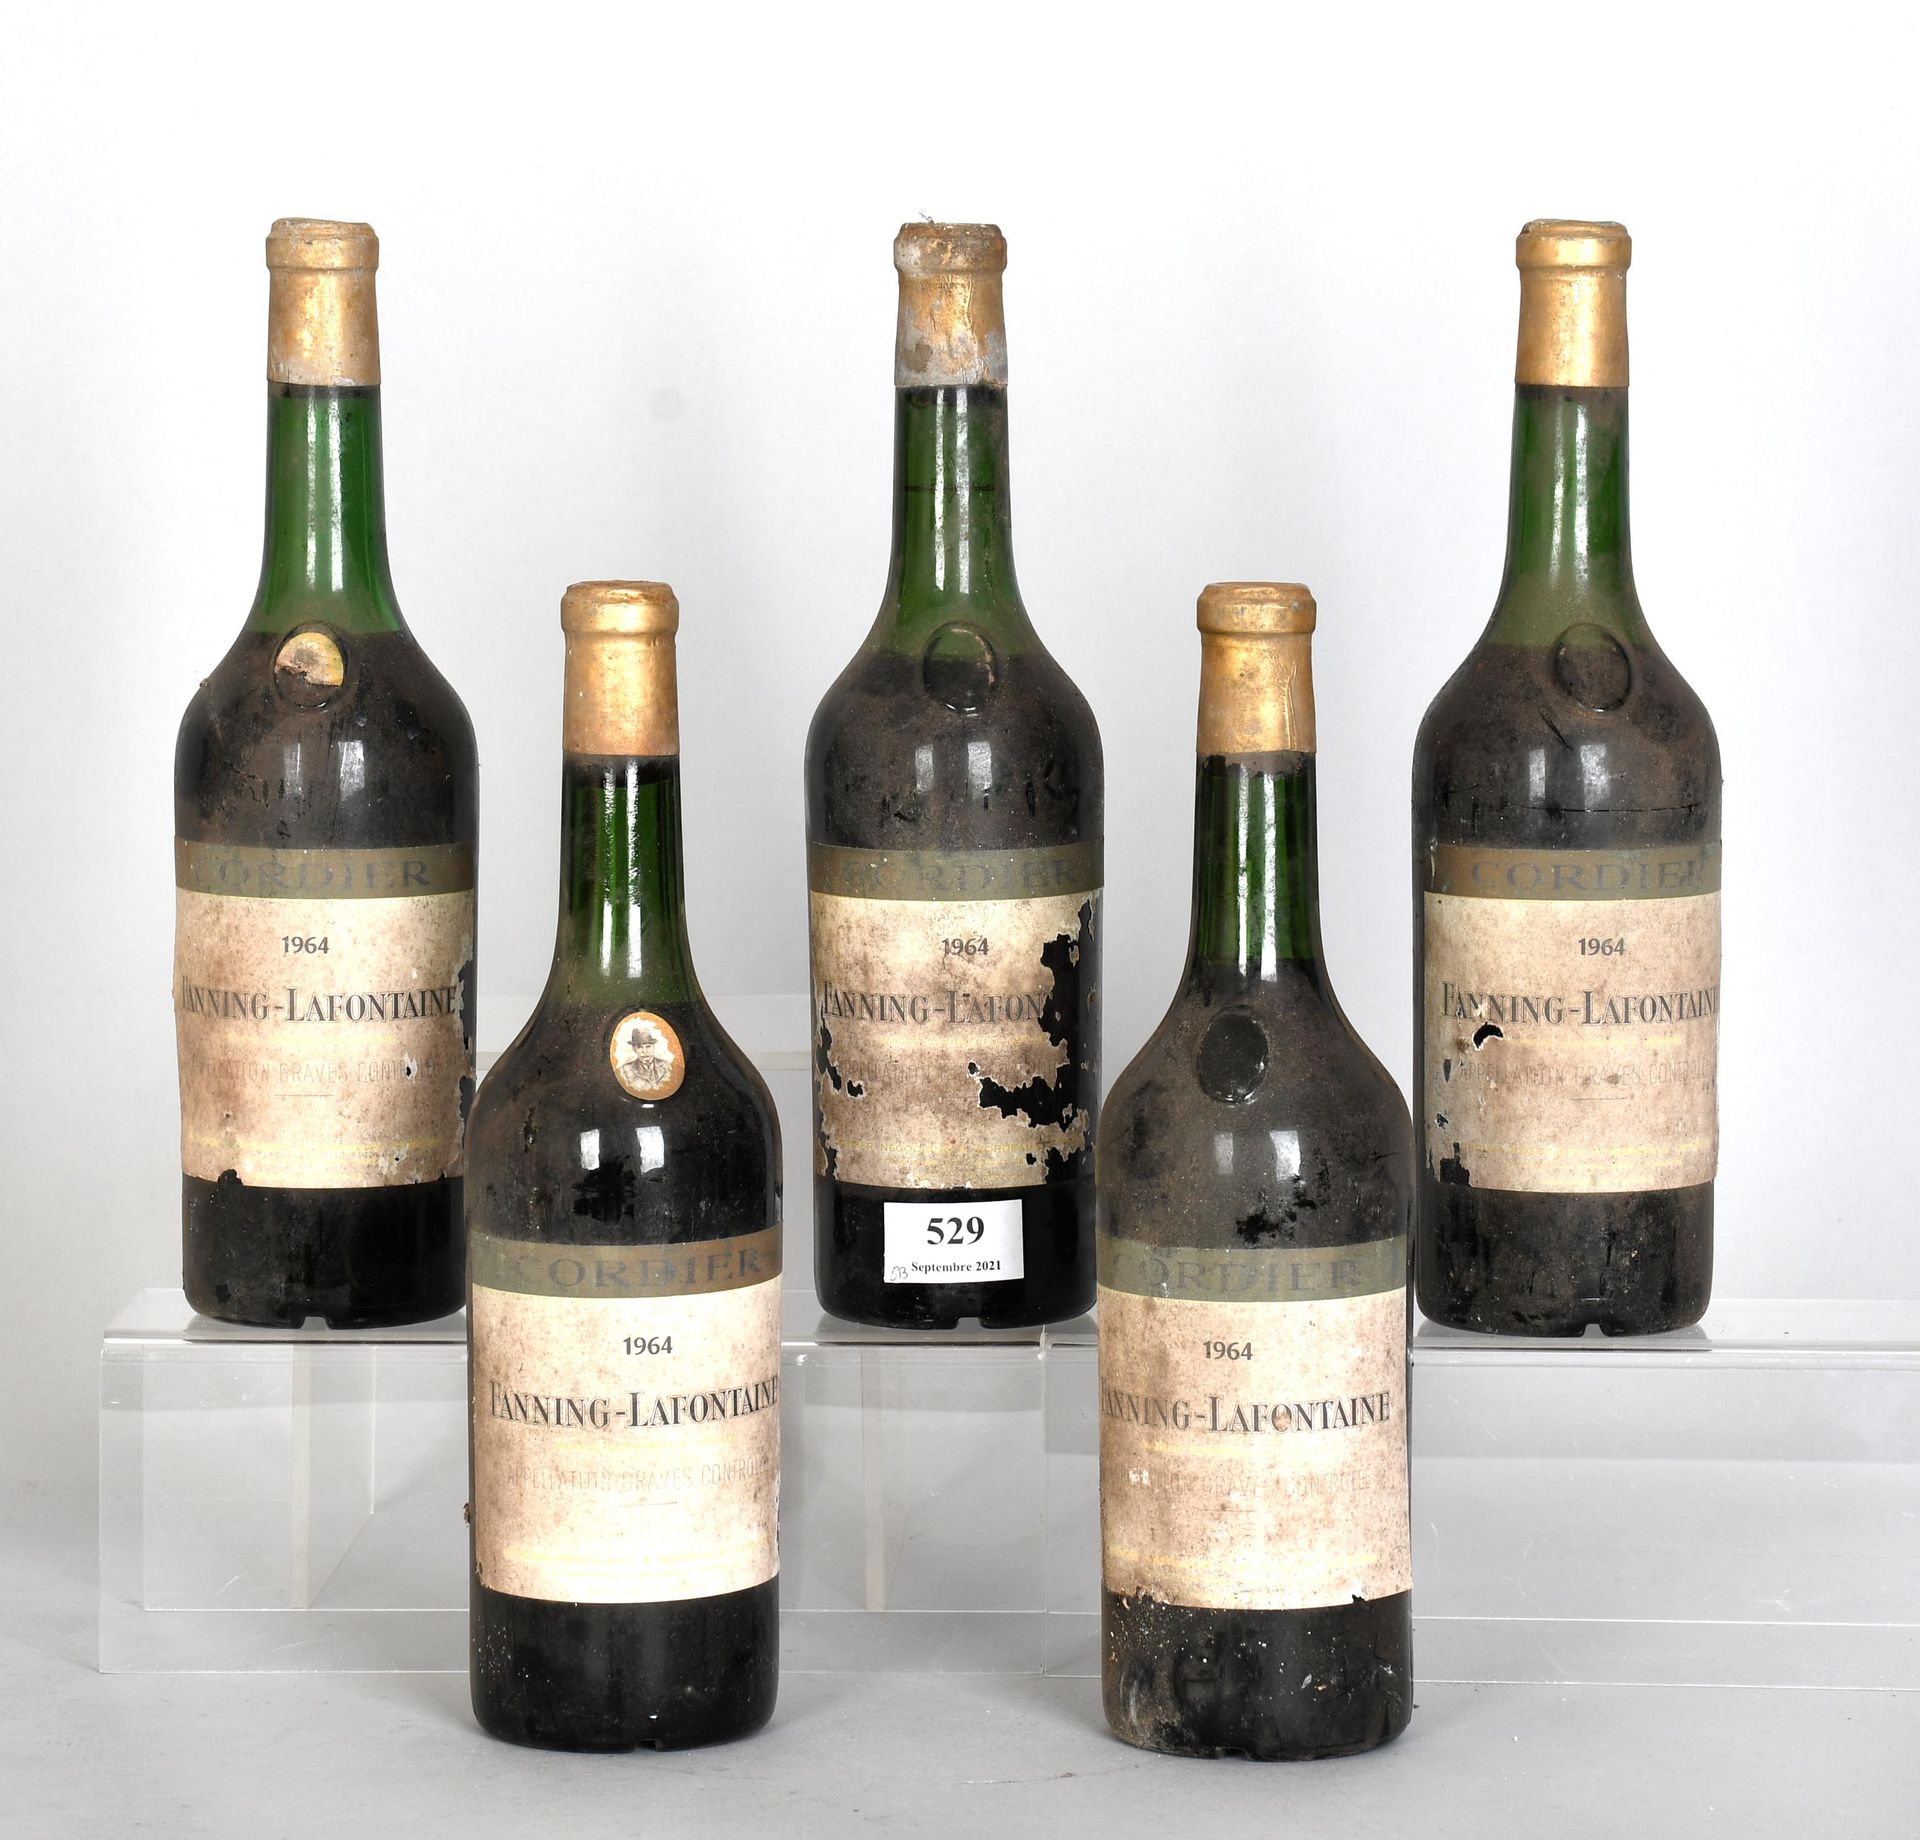 Null Fanning-Lafontaine 1964 - Cinq bouteilles de vin

Graves. Baisses de niveau&hellip;